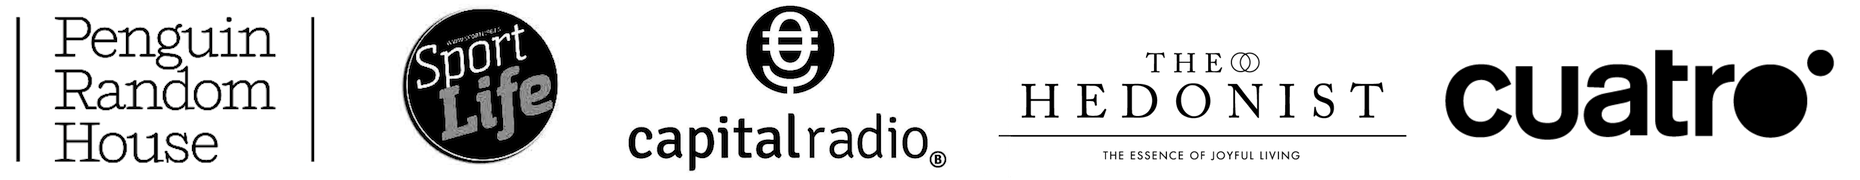 Banner de logos en blanco y negro